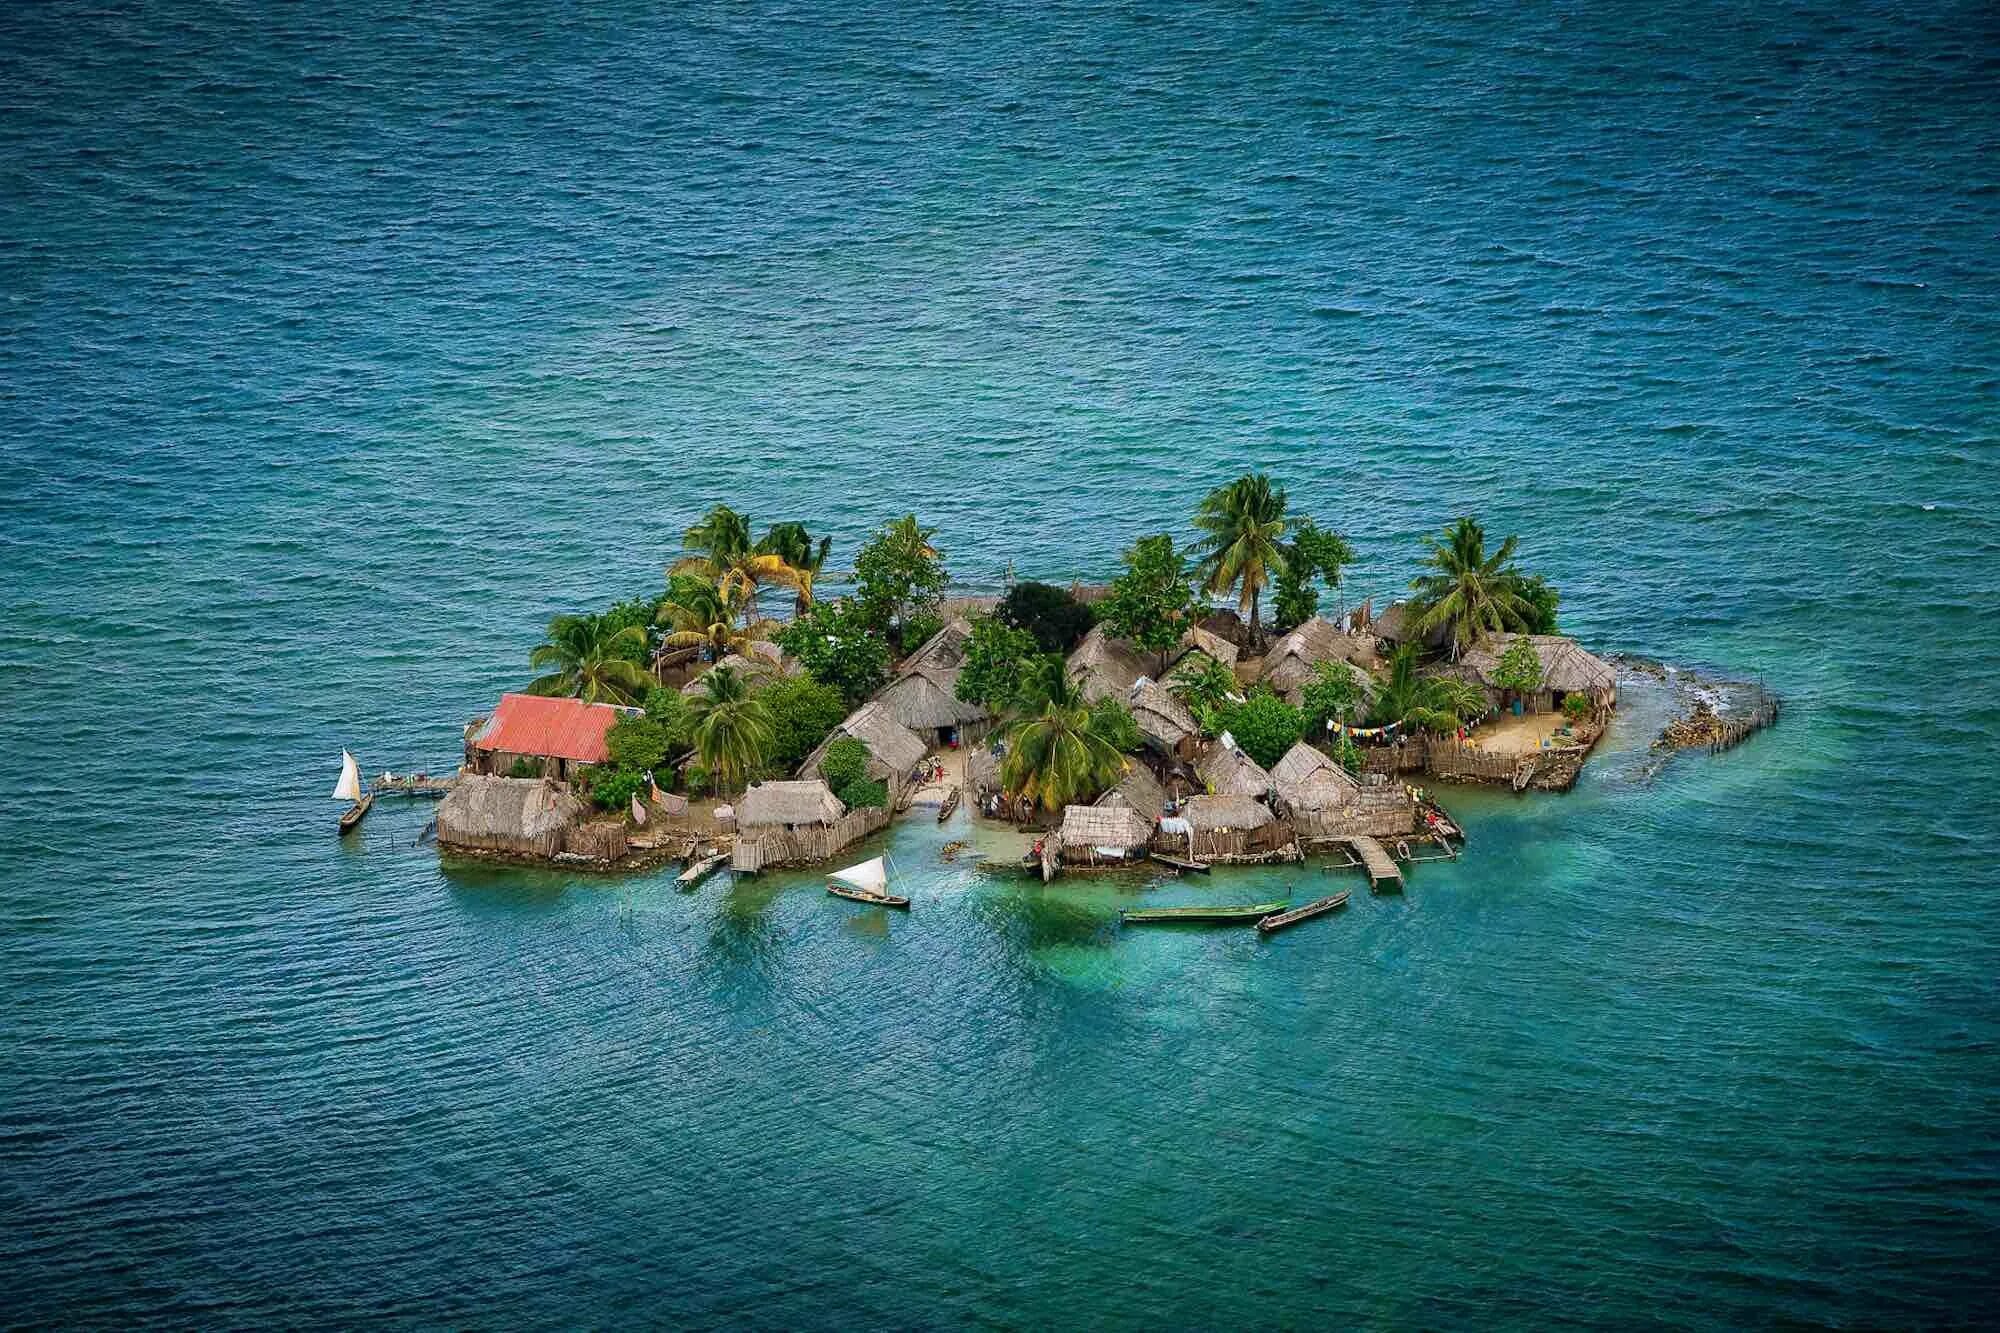 Остров человек в океане. Острова Сан-Блас, Панама. Архипелаг Сан-Блас. Группа островов Сан Блас в Панаме. Коморские острова (архипелаг).